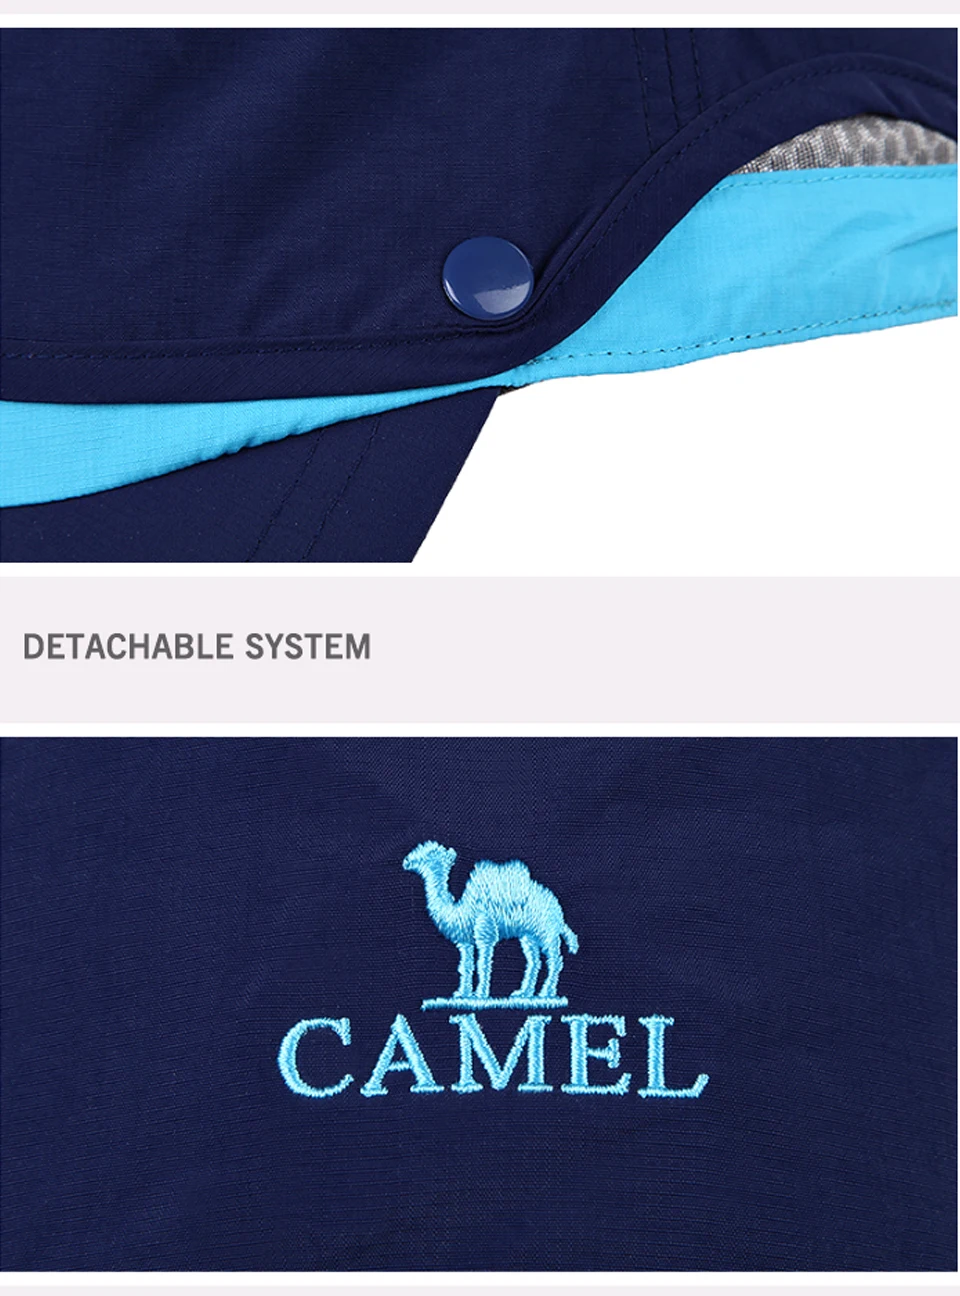 CAMEL унисекс нейлоновая наружная козырьковая шляпа двойной слой Ультралегкая дышащая удобная Кепка для походов кемпинга рыбалки